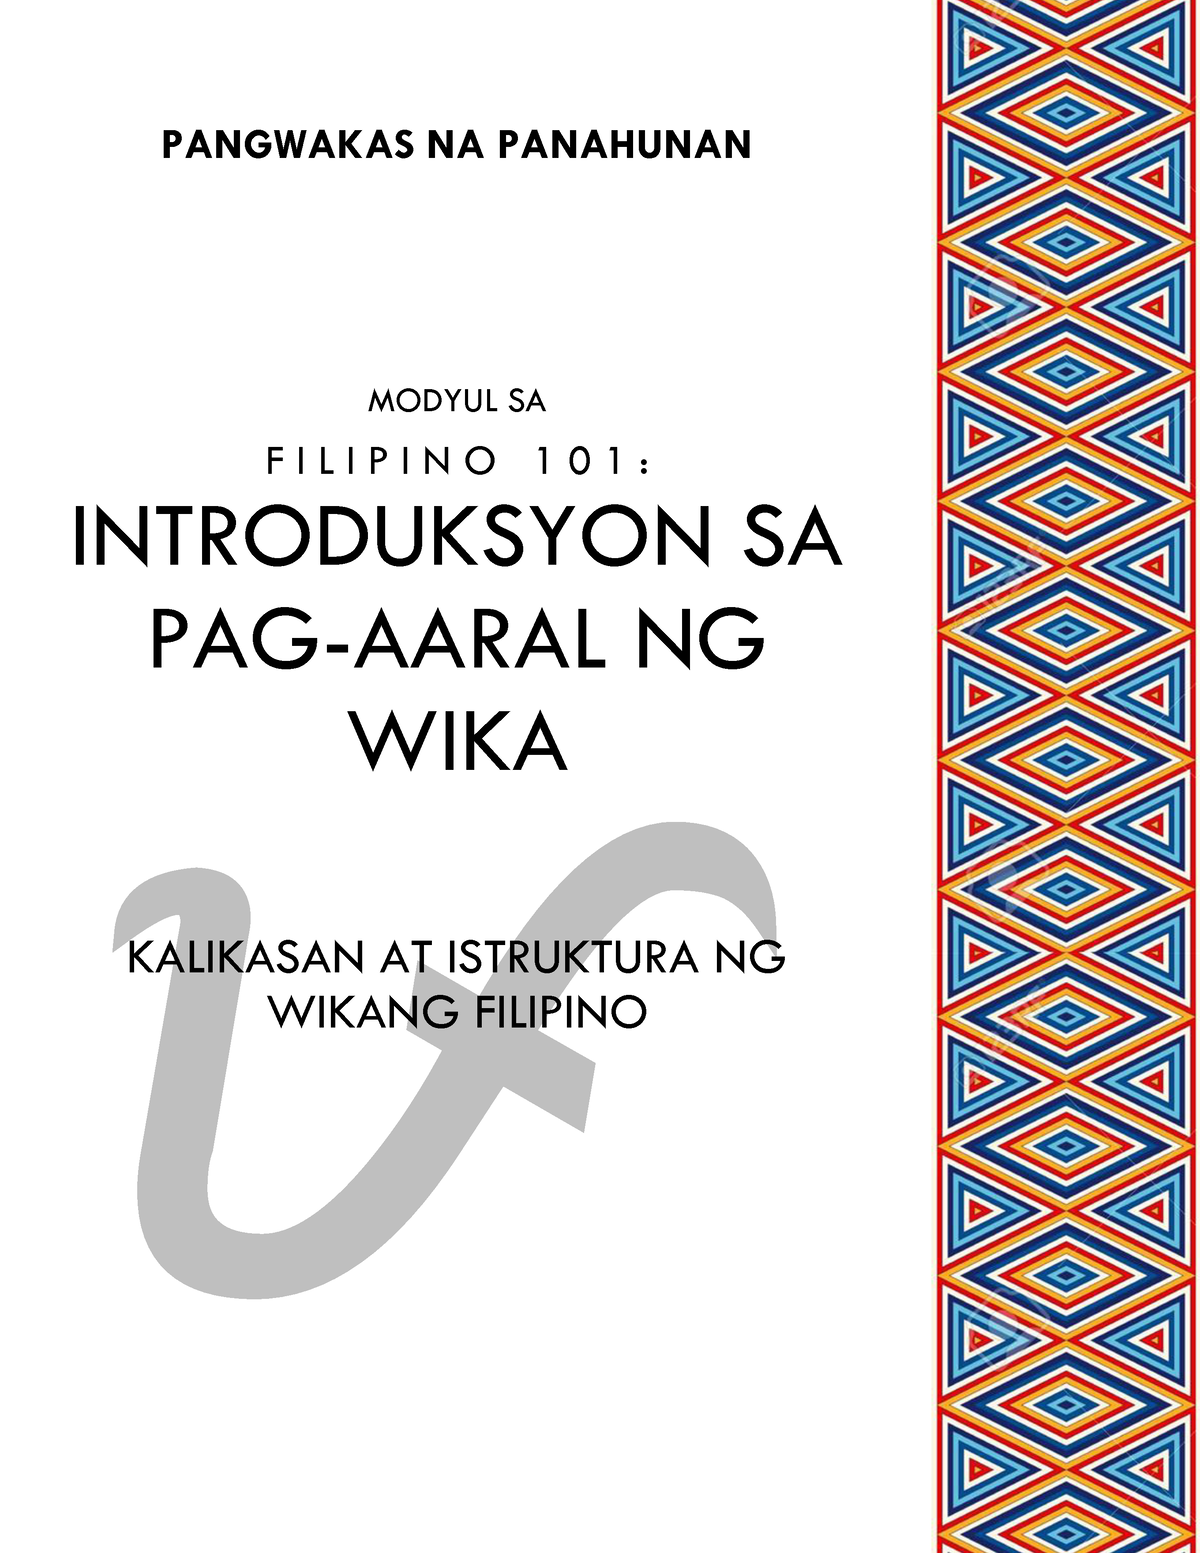 Modyul Sa Fil 101 Kalikasan At Istruktura Ng Wikang Filipino F Pangwakas Na Panahunan Modyul 7964